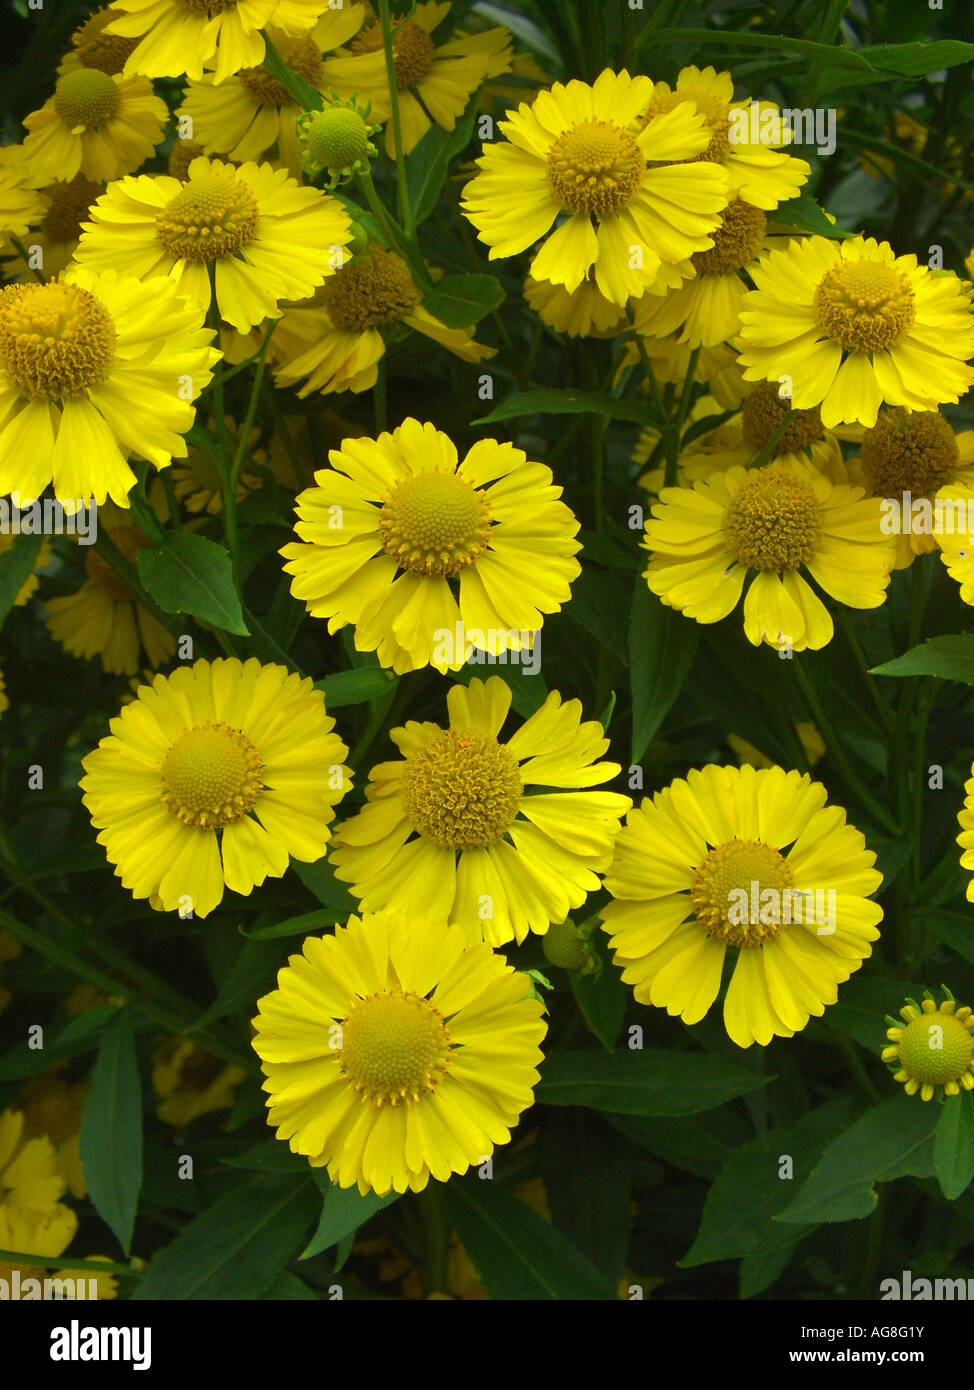 Sneezeweed (Helenium 'Kugelsonne', Helenium Kugelsonne, Helenium-Hybride Kugelsonne), inflorescence Stock Photo